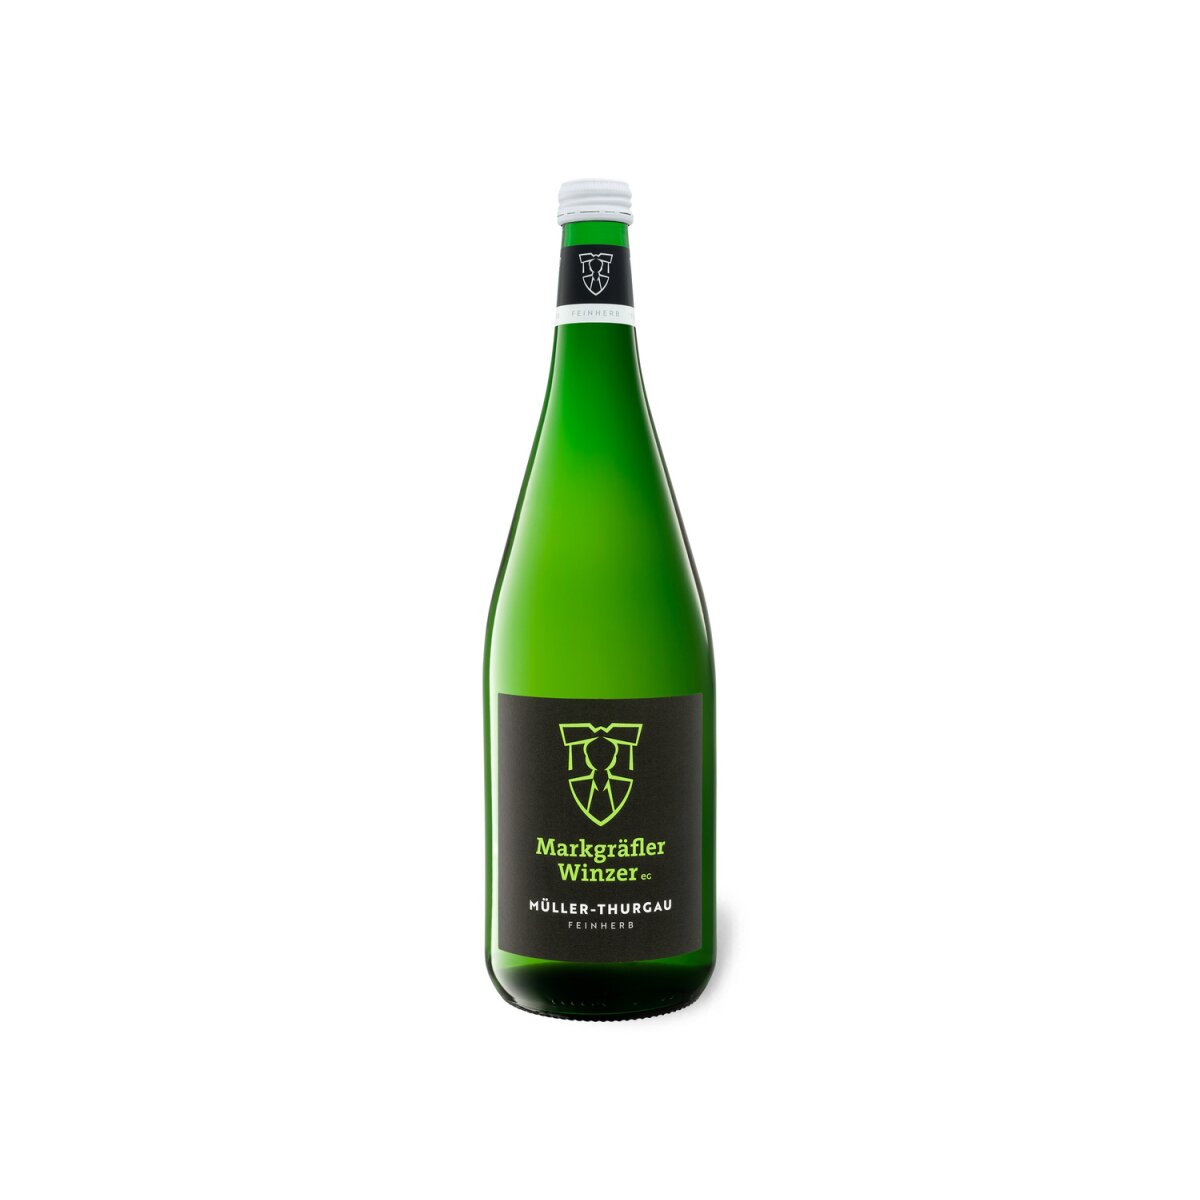 Markgräfler Winzer Müller-Thurgau QbA feinherb, Literflasche, Weißwein 2022,  3,99 €